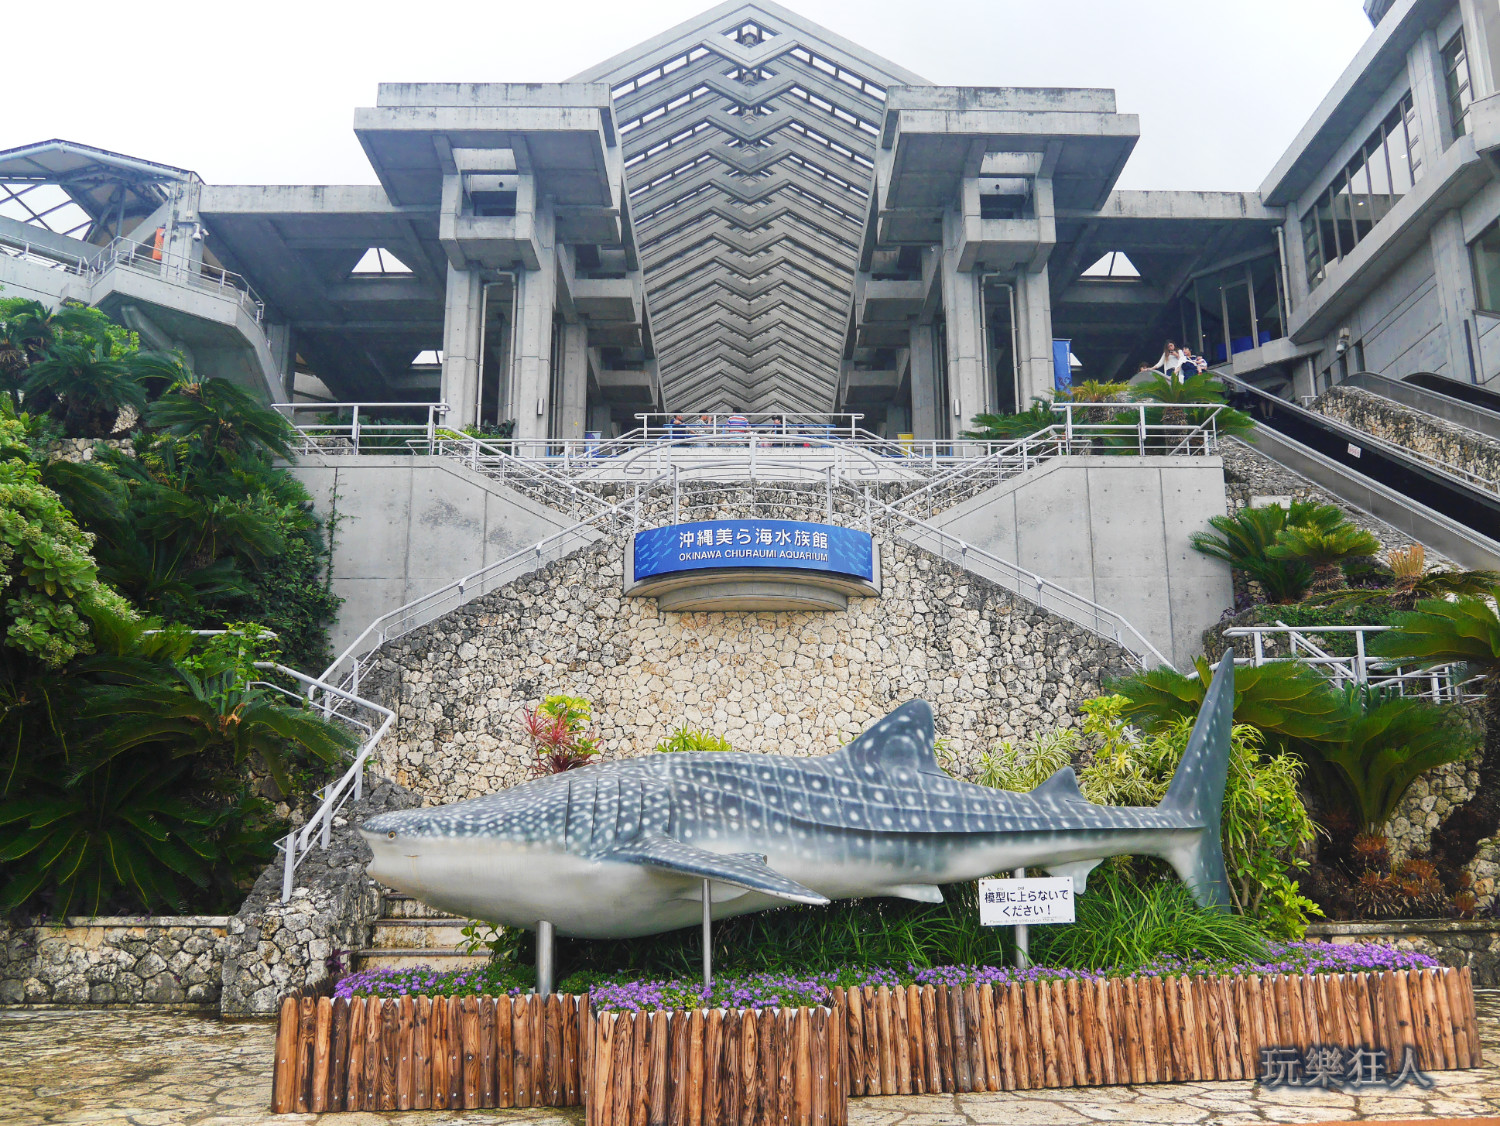 『海洋博公園』沖繩美麗海水族館